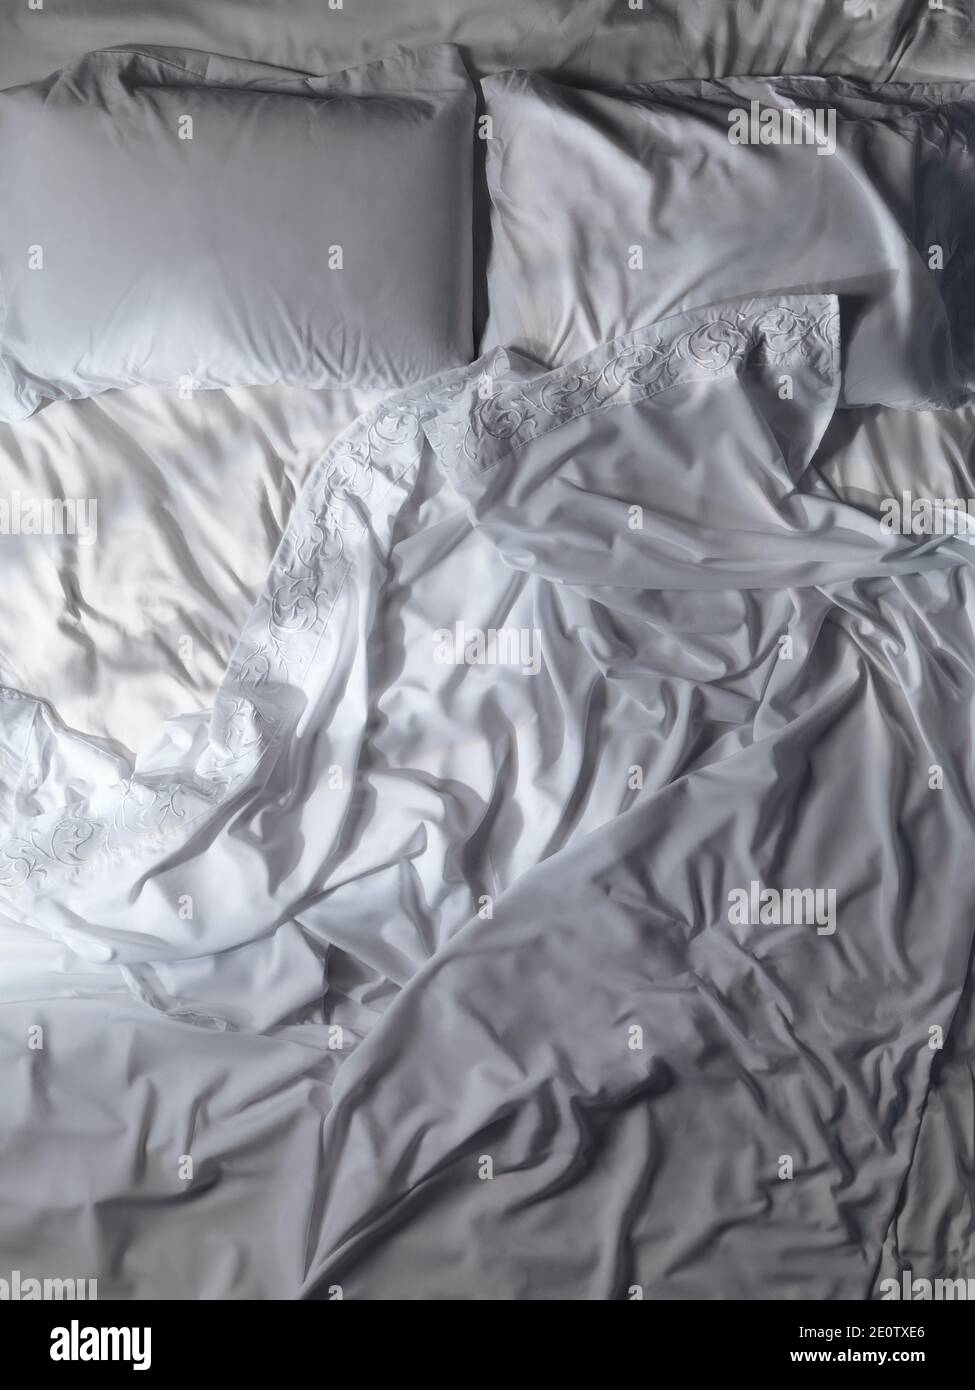 Lit vide non fait, draps de lit et oreillers en dentelle blanche et en désordre. Arrière-plan artistique, vue du dessus. Banque D'Images